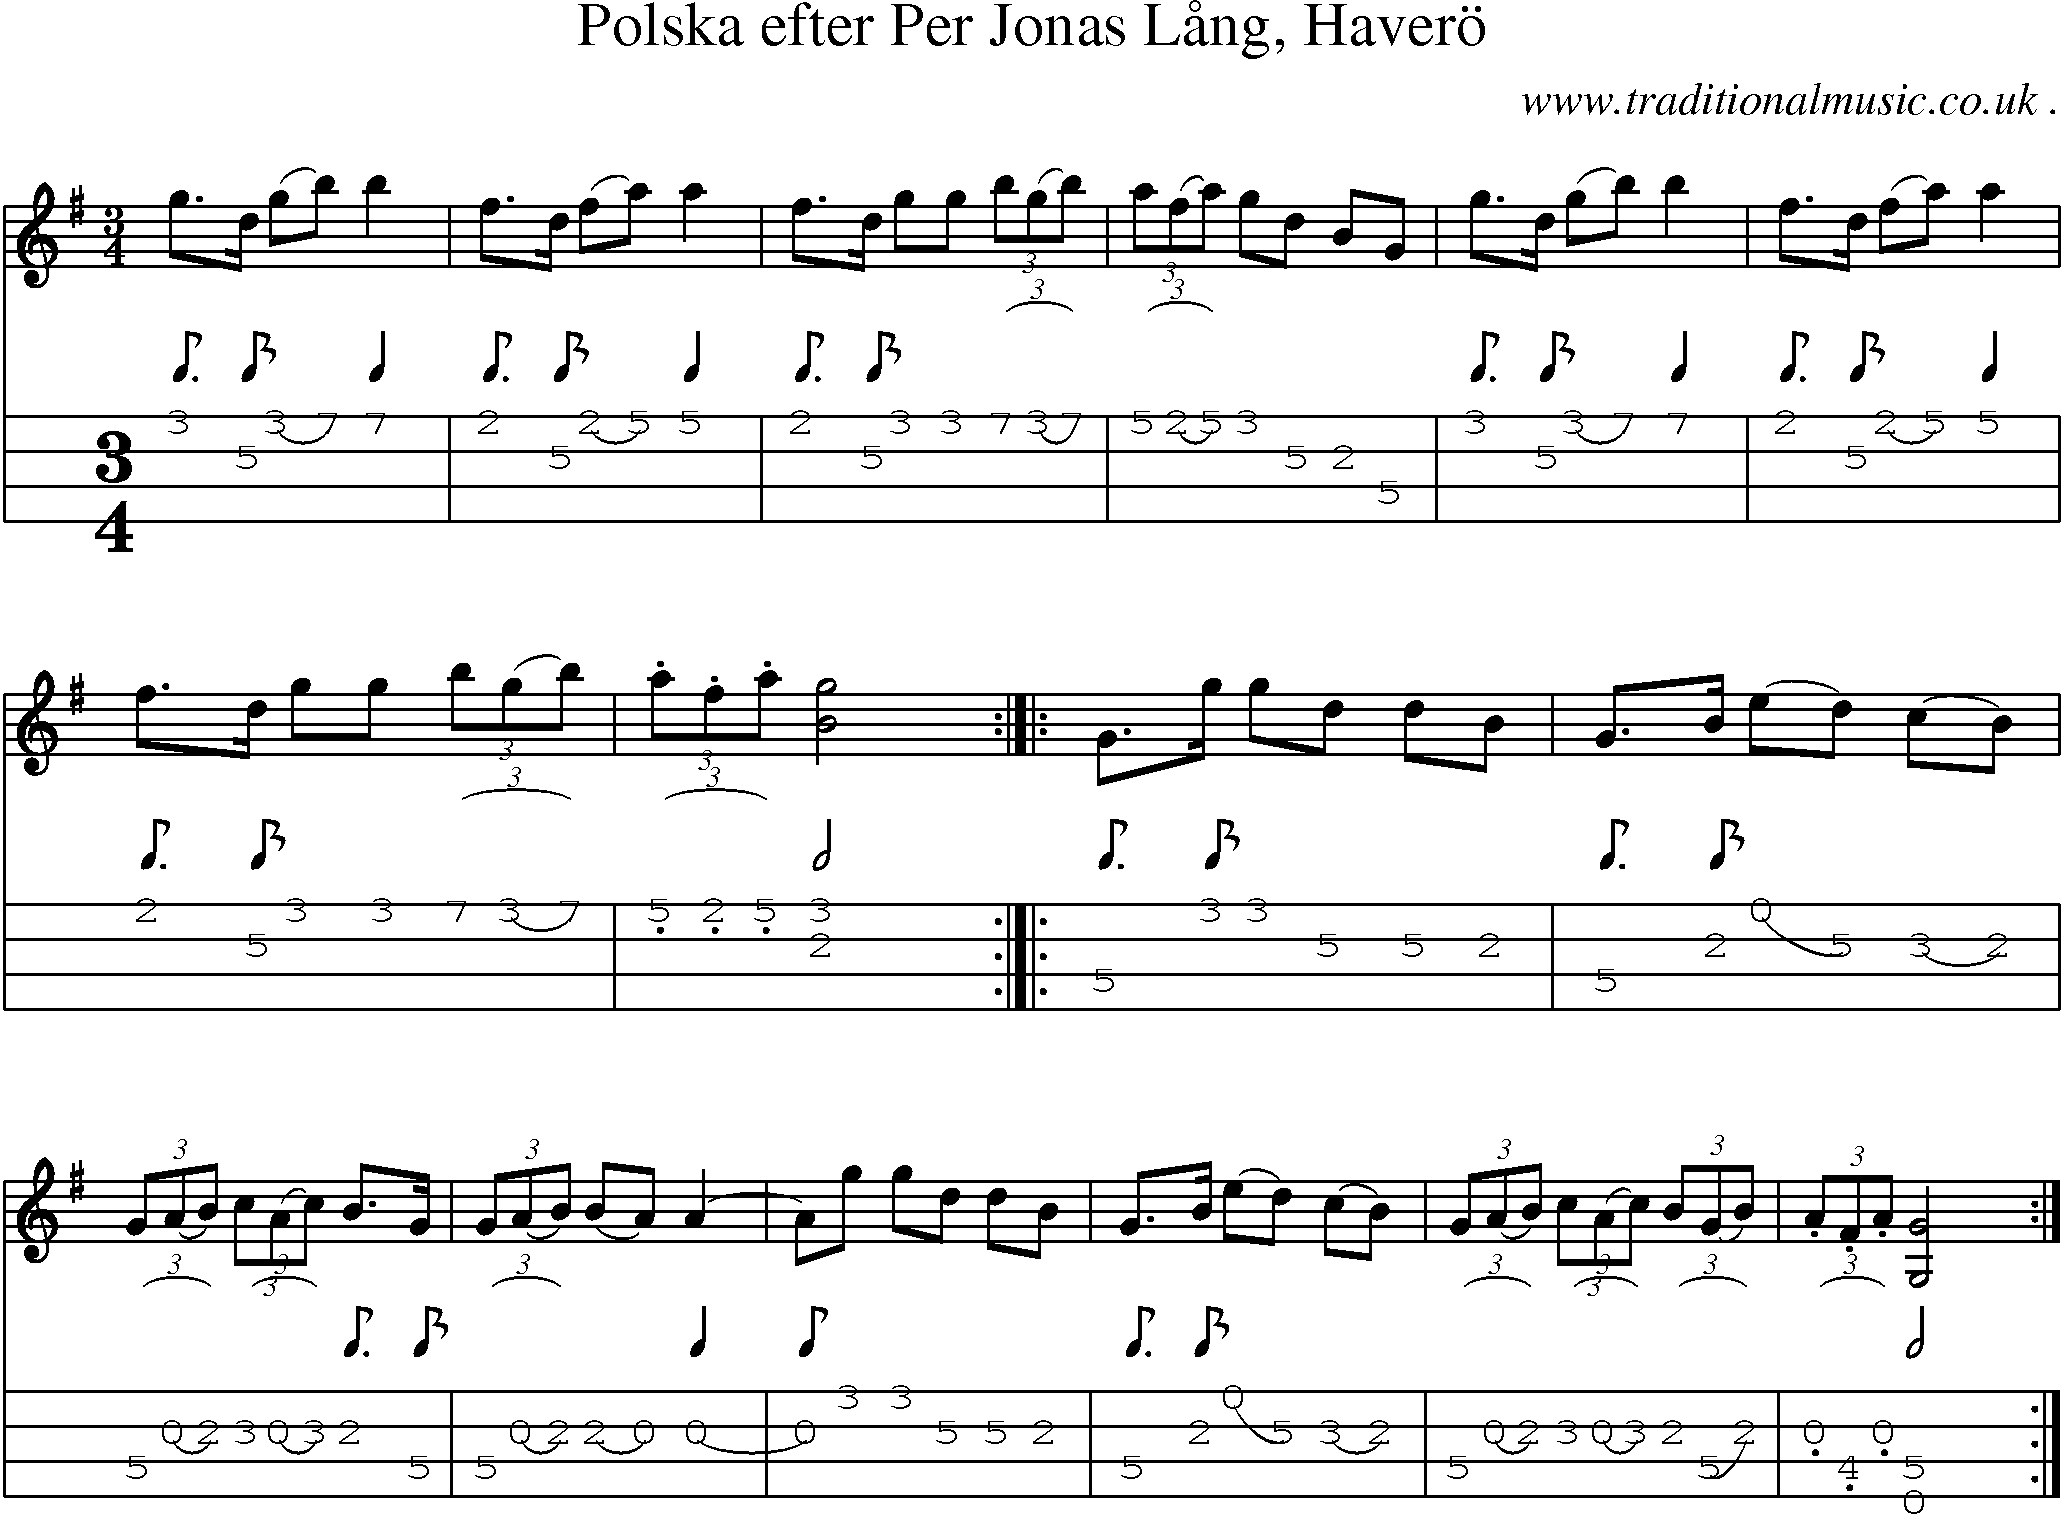 Sheet-Music and Mandolin Tabs for Polska Efter Per Jonas Laang Havero